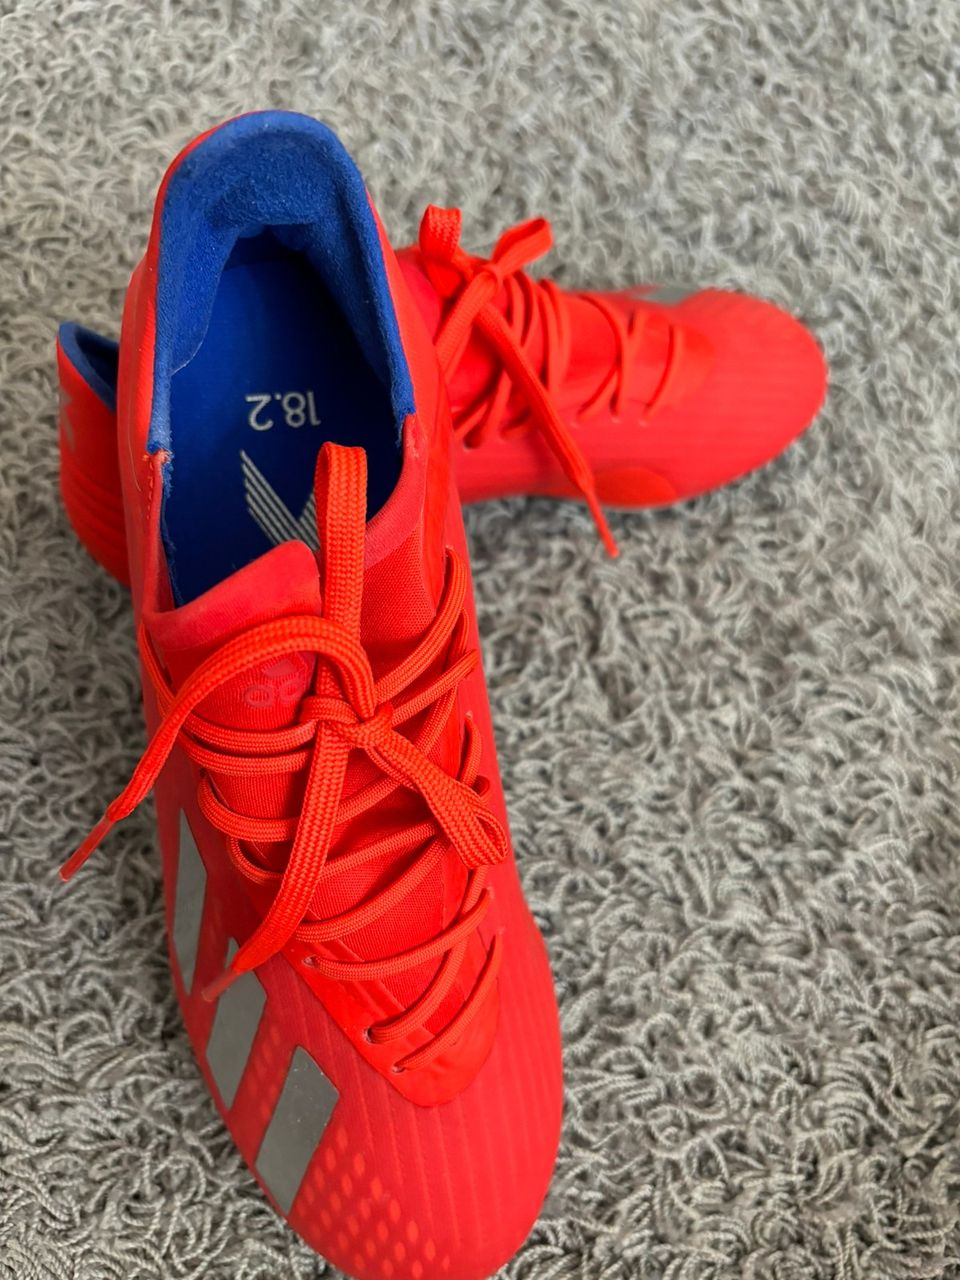 Adidas jalkapallo kengät Naisten, koko 40